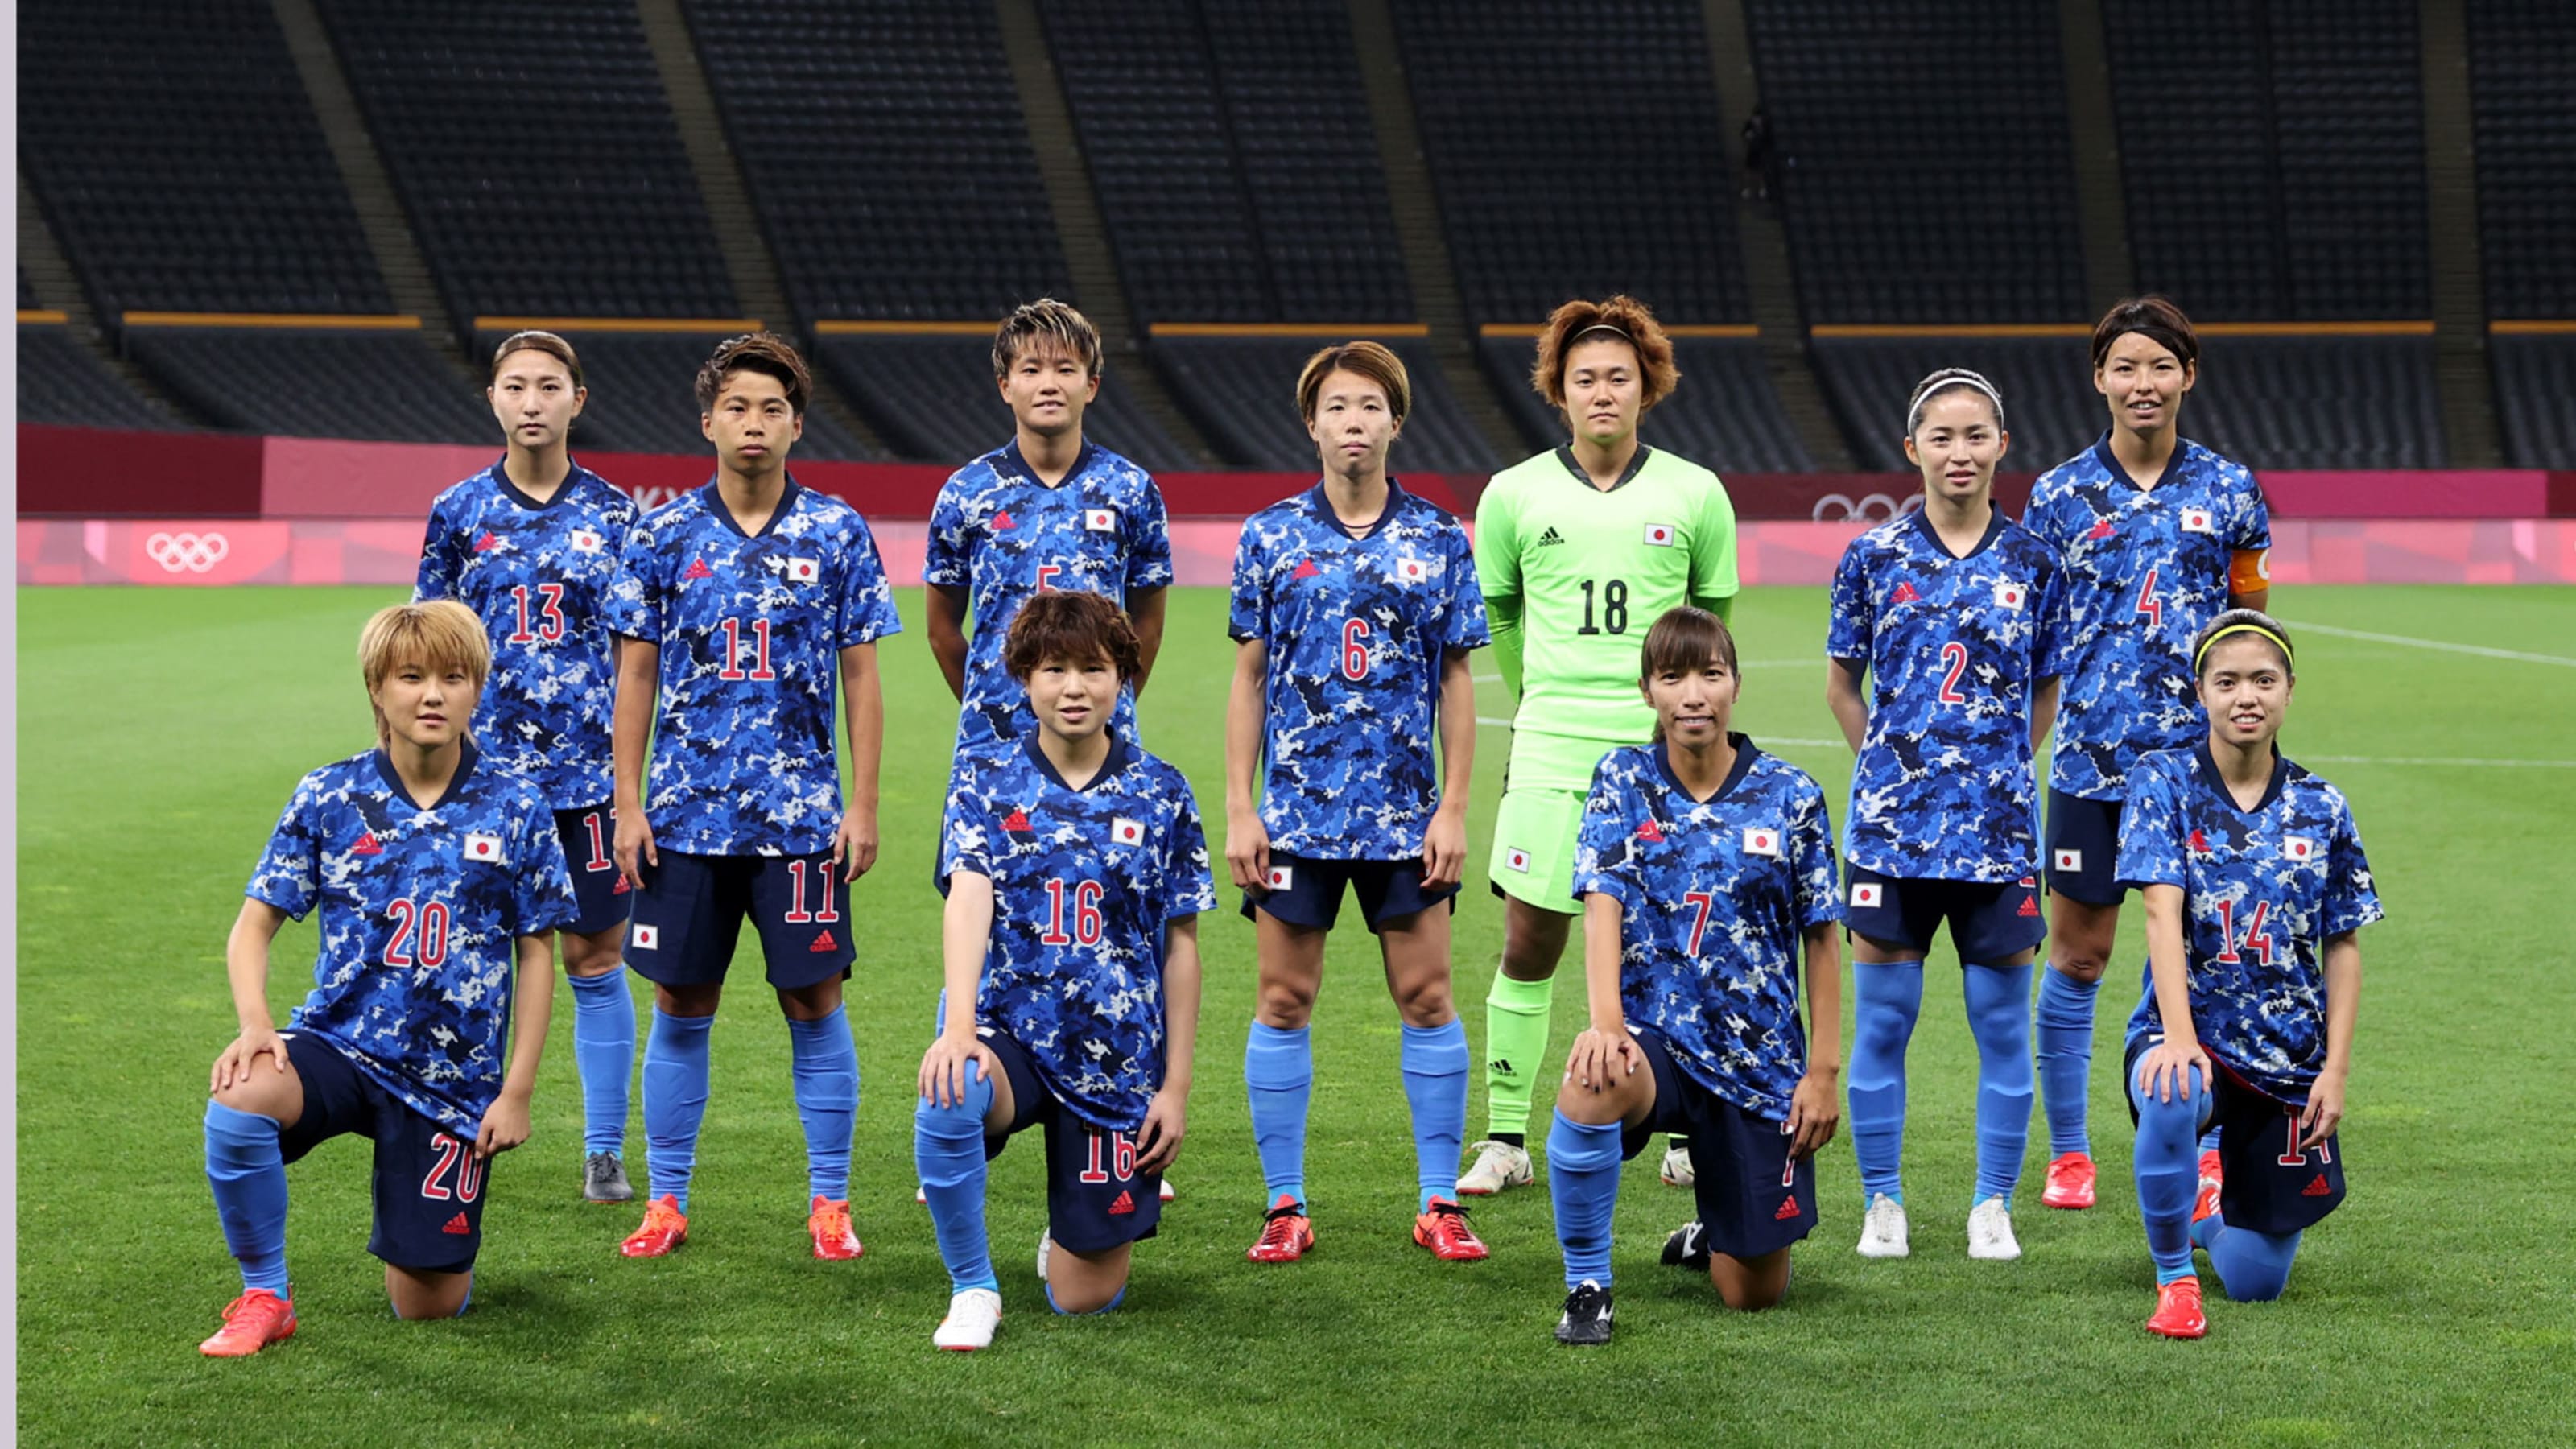 7月27日 東京五輪サッカー競技 女子 の放送予定 なでしこ チリ戦勝利でグループステージ突破なるか